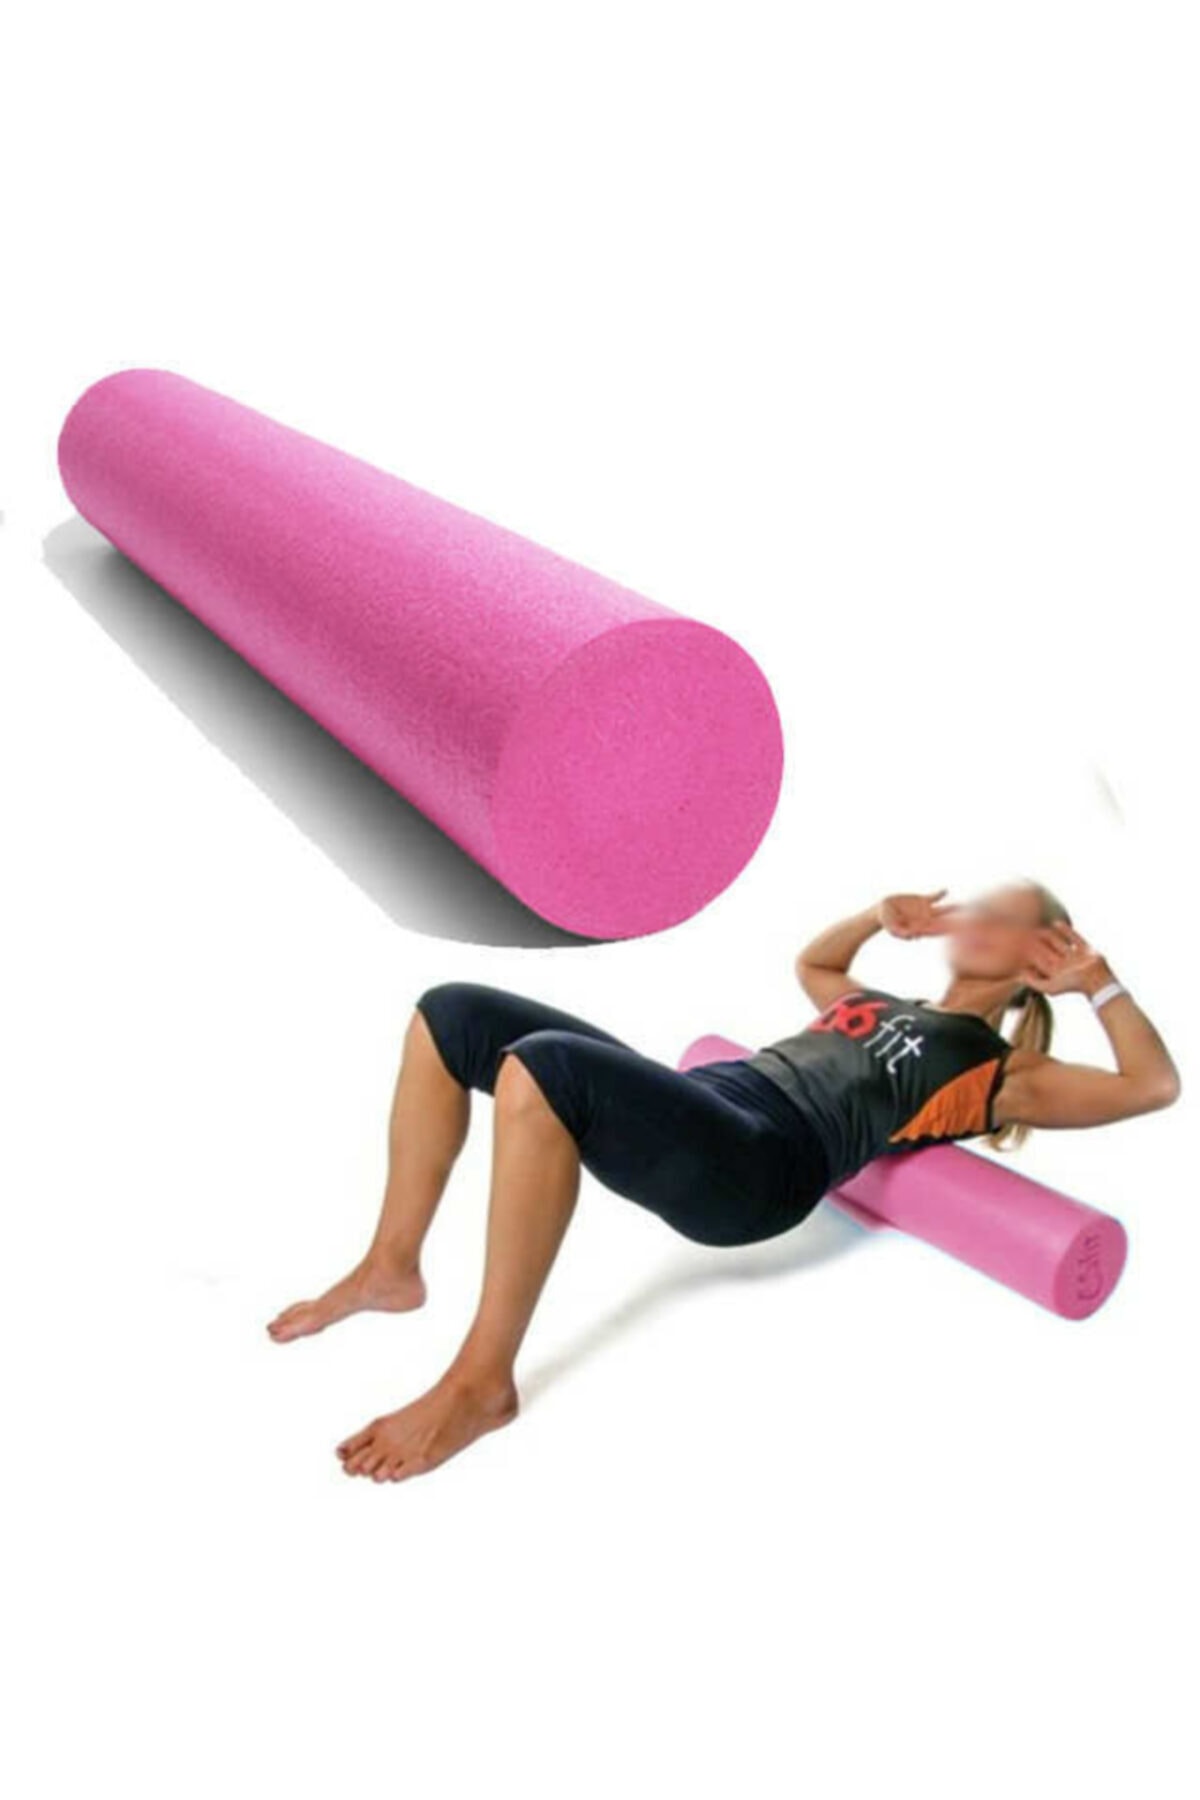 MOYASHOP Pembe Eva Foam Roller - Pilates - Fizik Tedavi - Egzersiz - Spor - 90x15 Cm